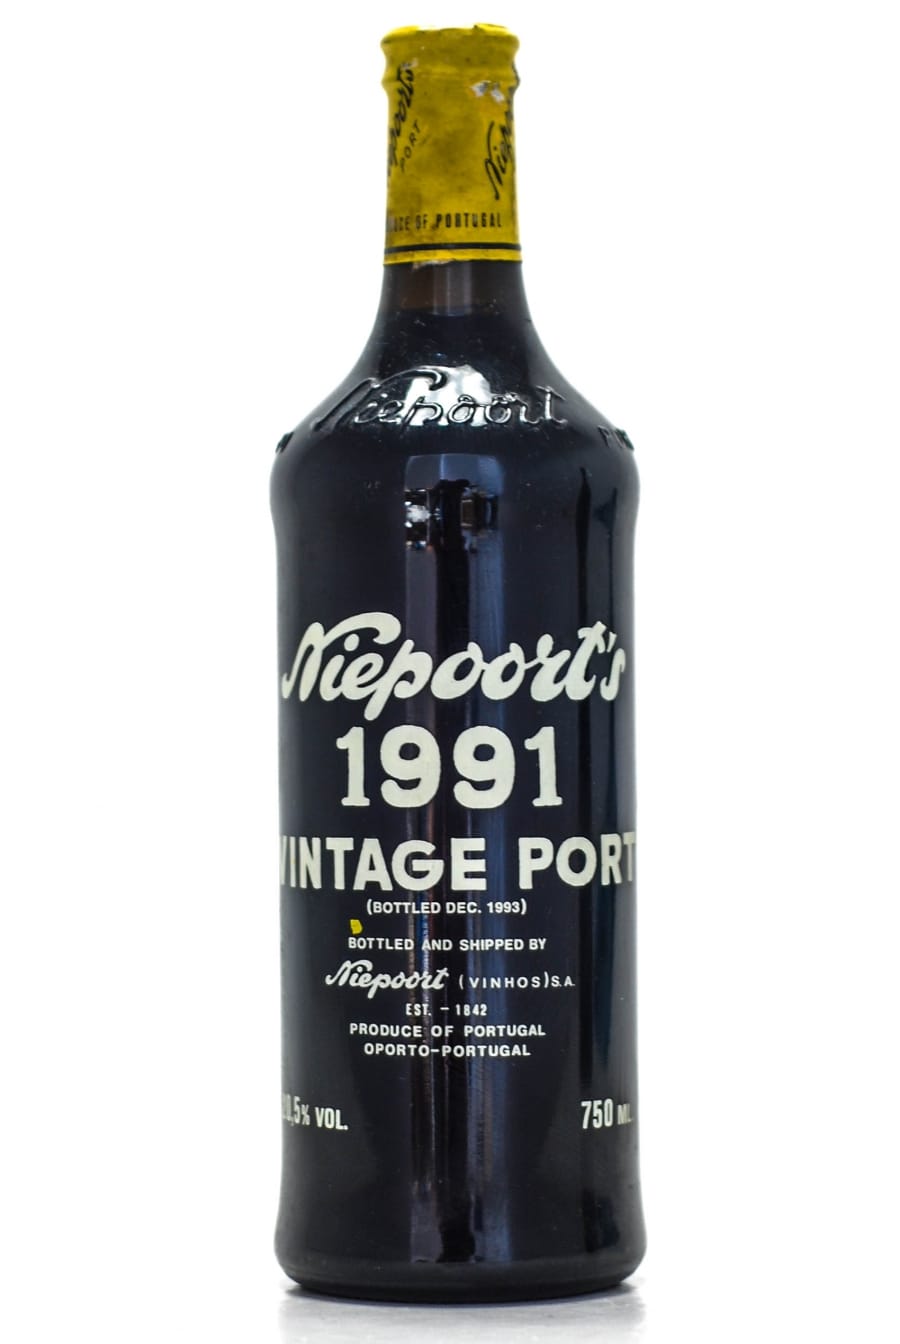 1991 vintage wine